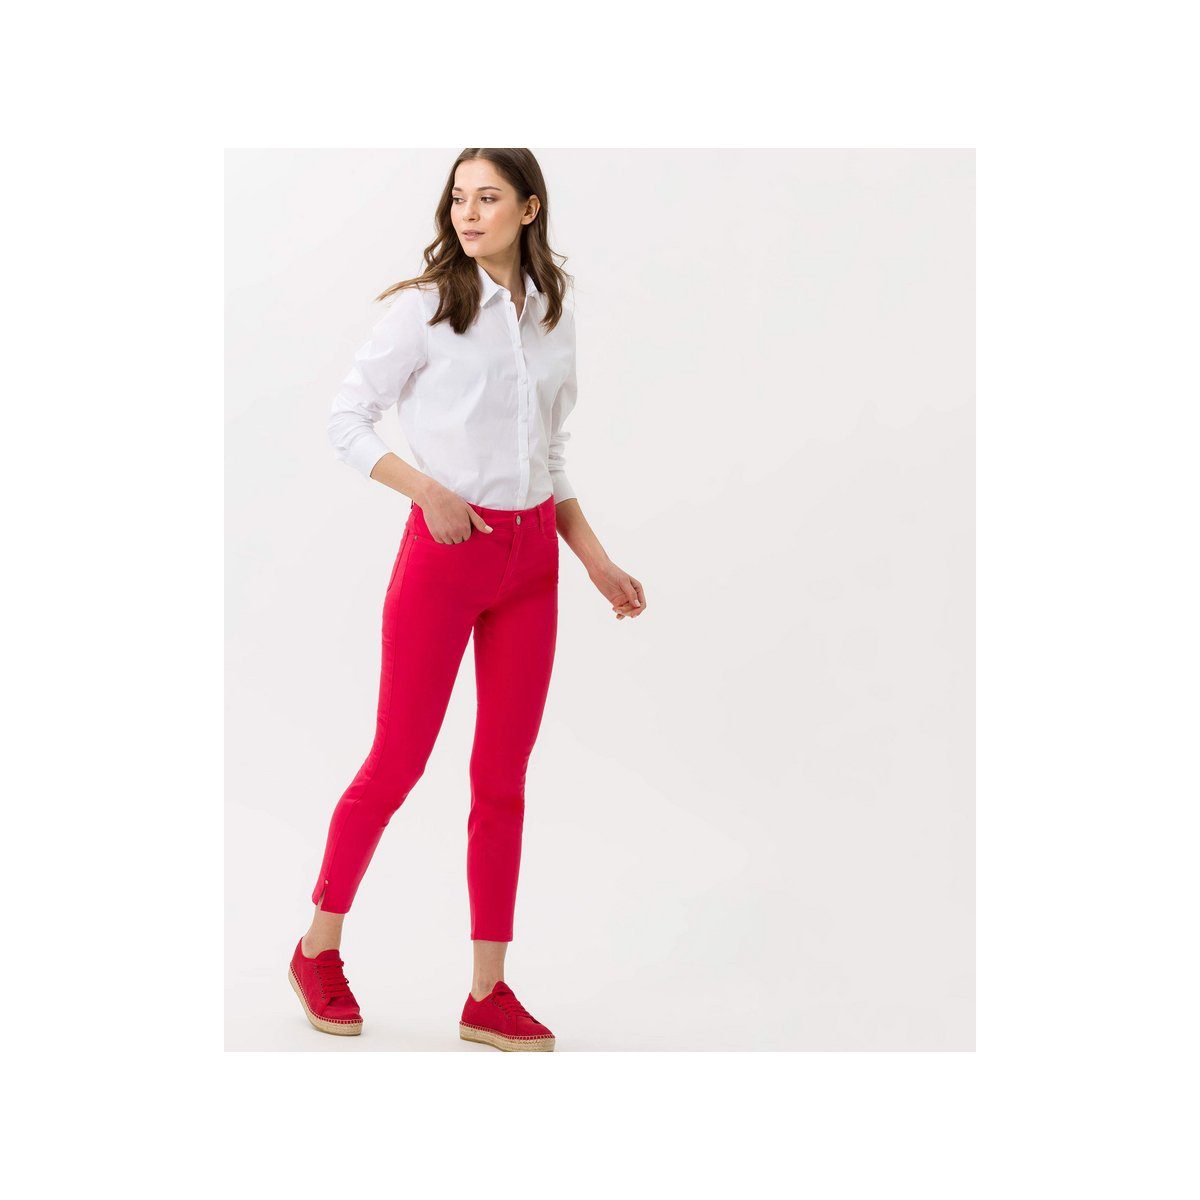 (1-tlg) Brax pink Skinny-fit-Jeans regular